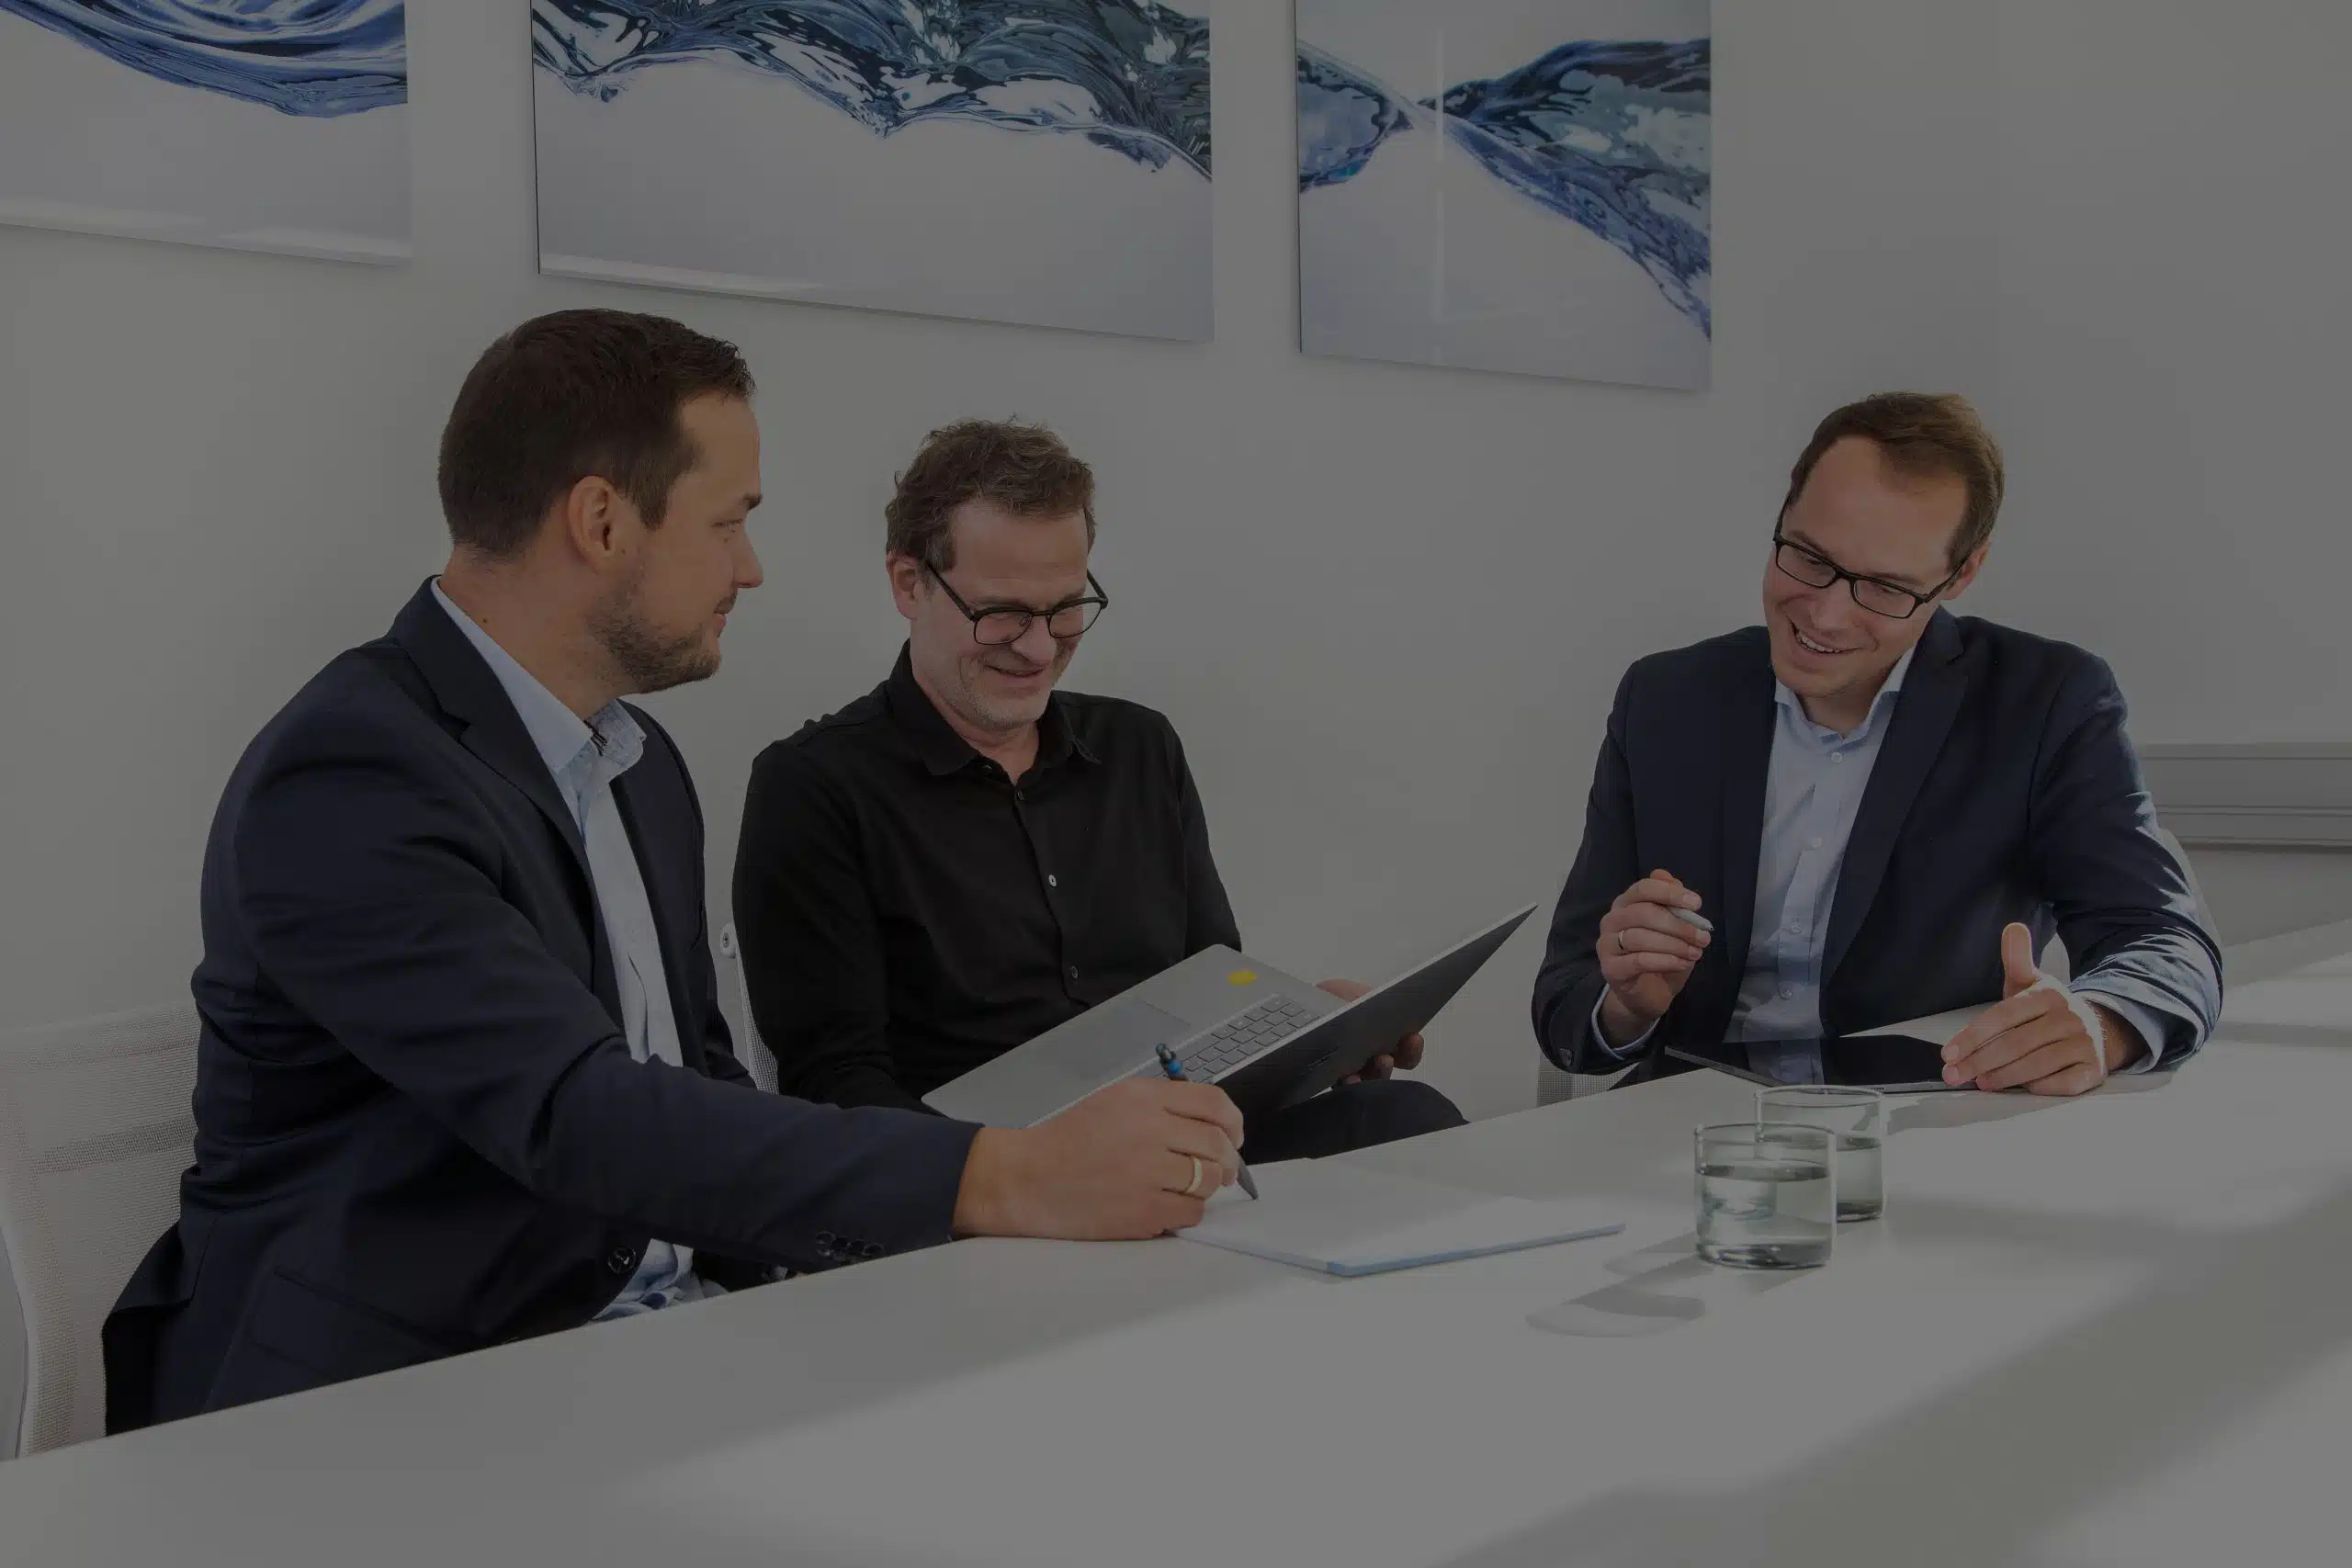 Frank Bott, Florian Brauers und Robert Kopiec, die drei Steuerberater der Kanzlei sitzen am Konferenztisch und arbeiten am Laptop, beraten sich und lachen herzlich. Im Hintergrund moderne Kunst. Das Bild hat eine schwarze Überlagerung von 60 Prozent.